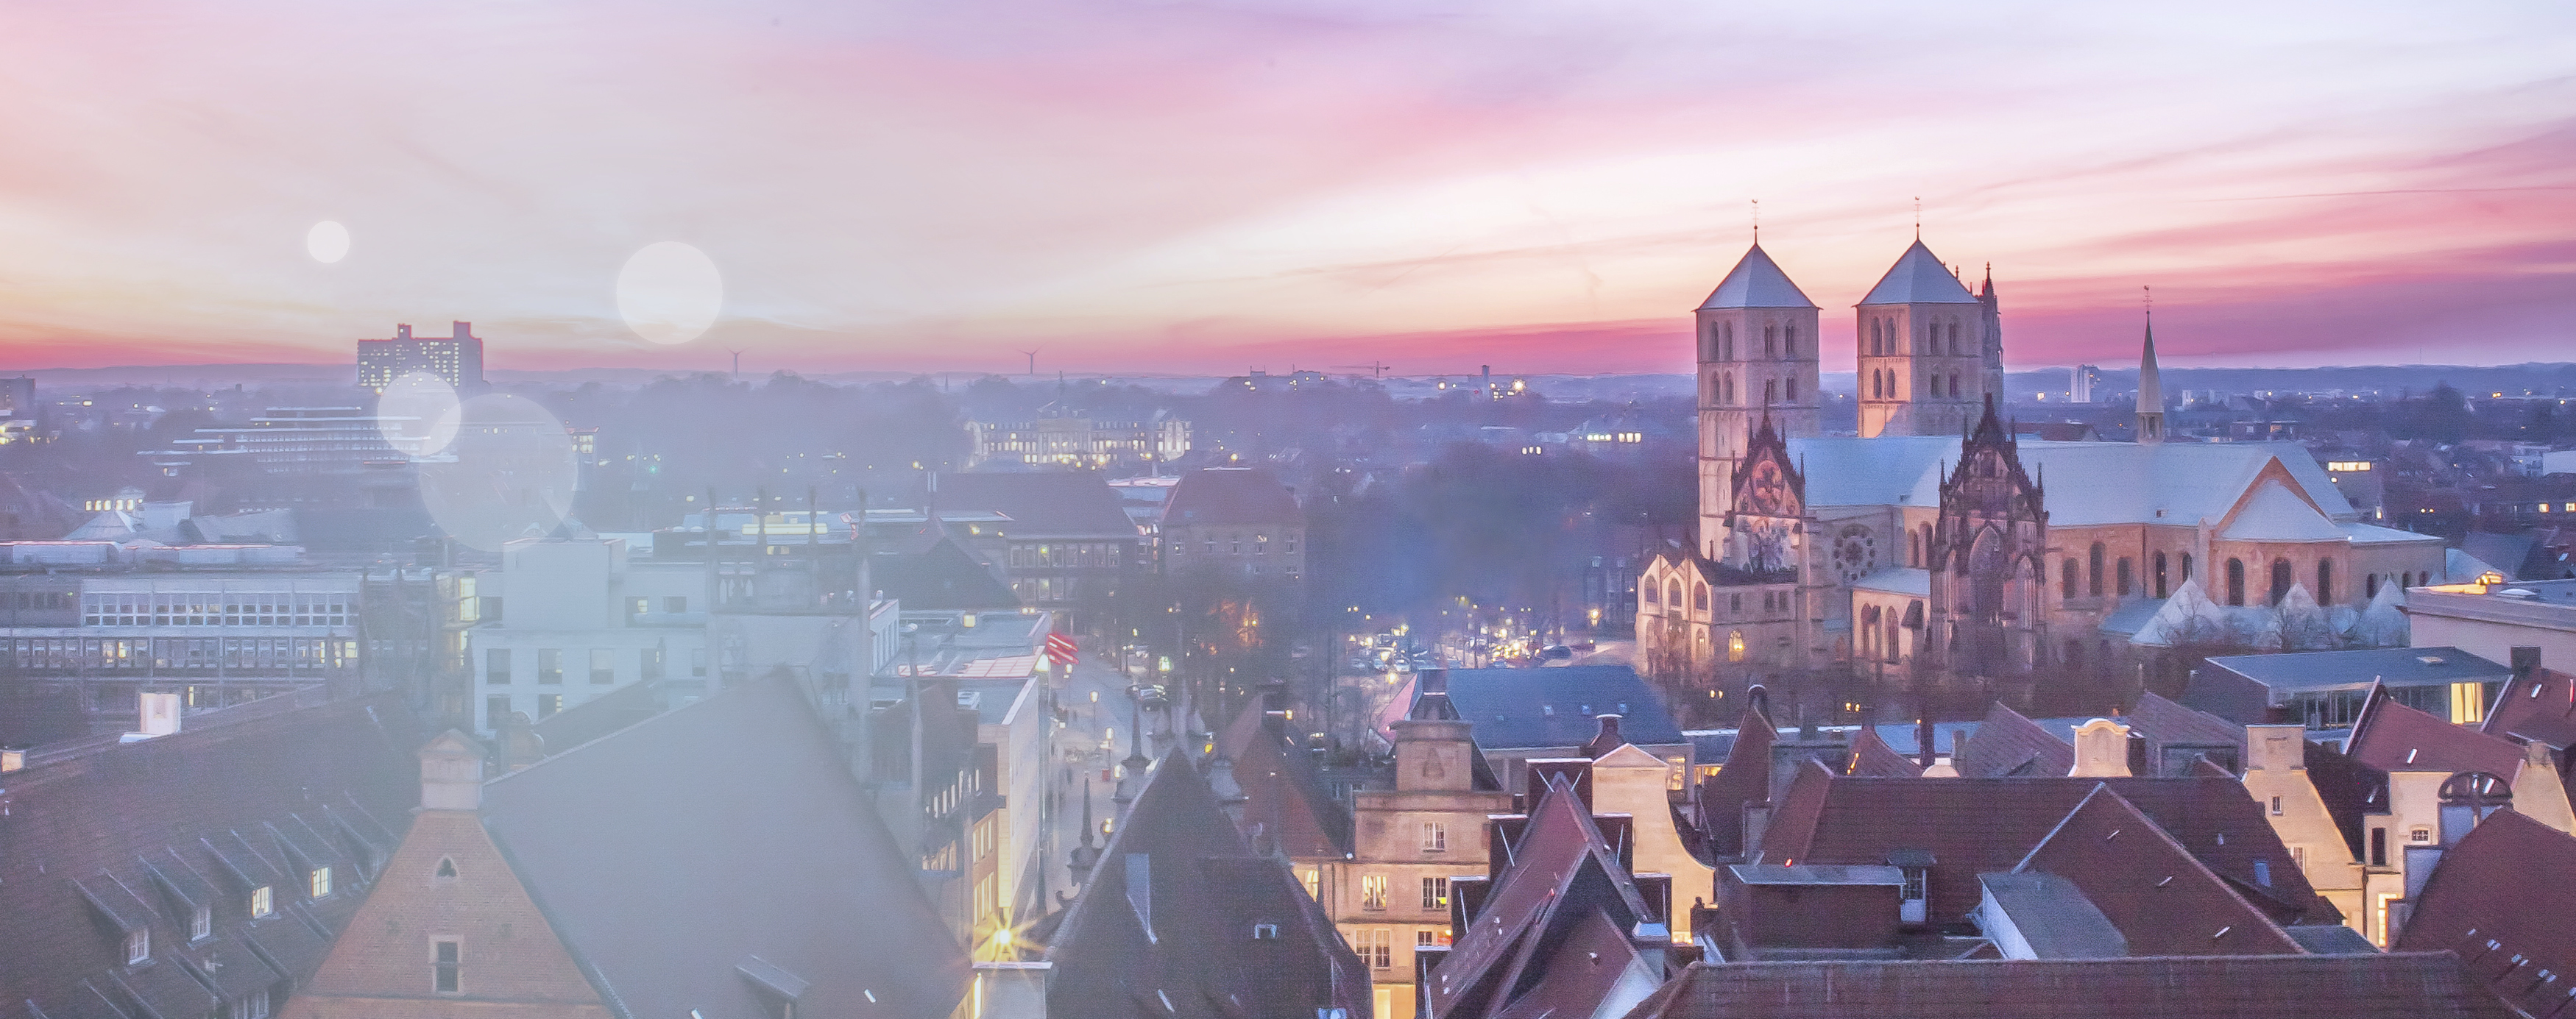 Wunderschöner lila- und rosafarbener Sonnenuntergang aus Sicht des münsterischen Stadthauses, zu sehen sind die Dächer von Münster inklusive des St.-Paulus-Doms.